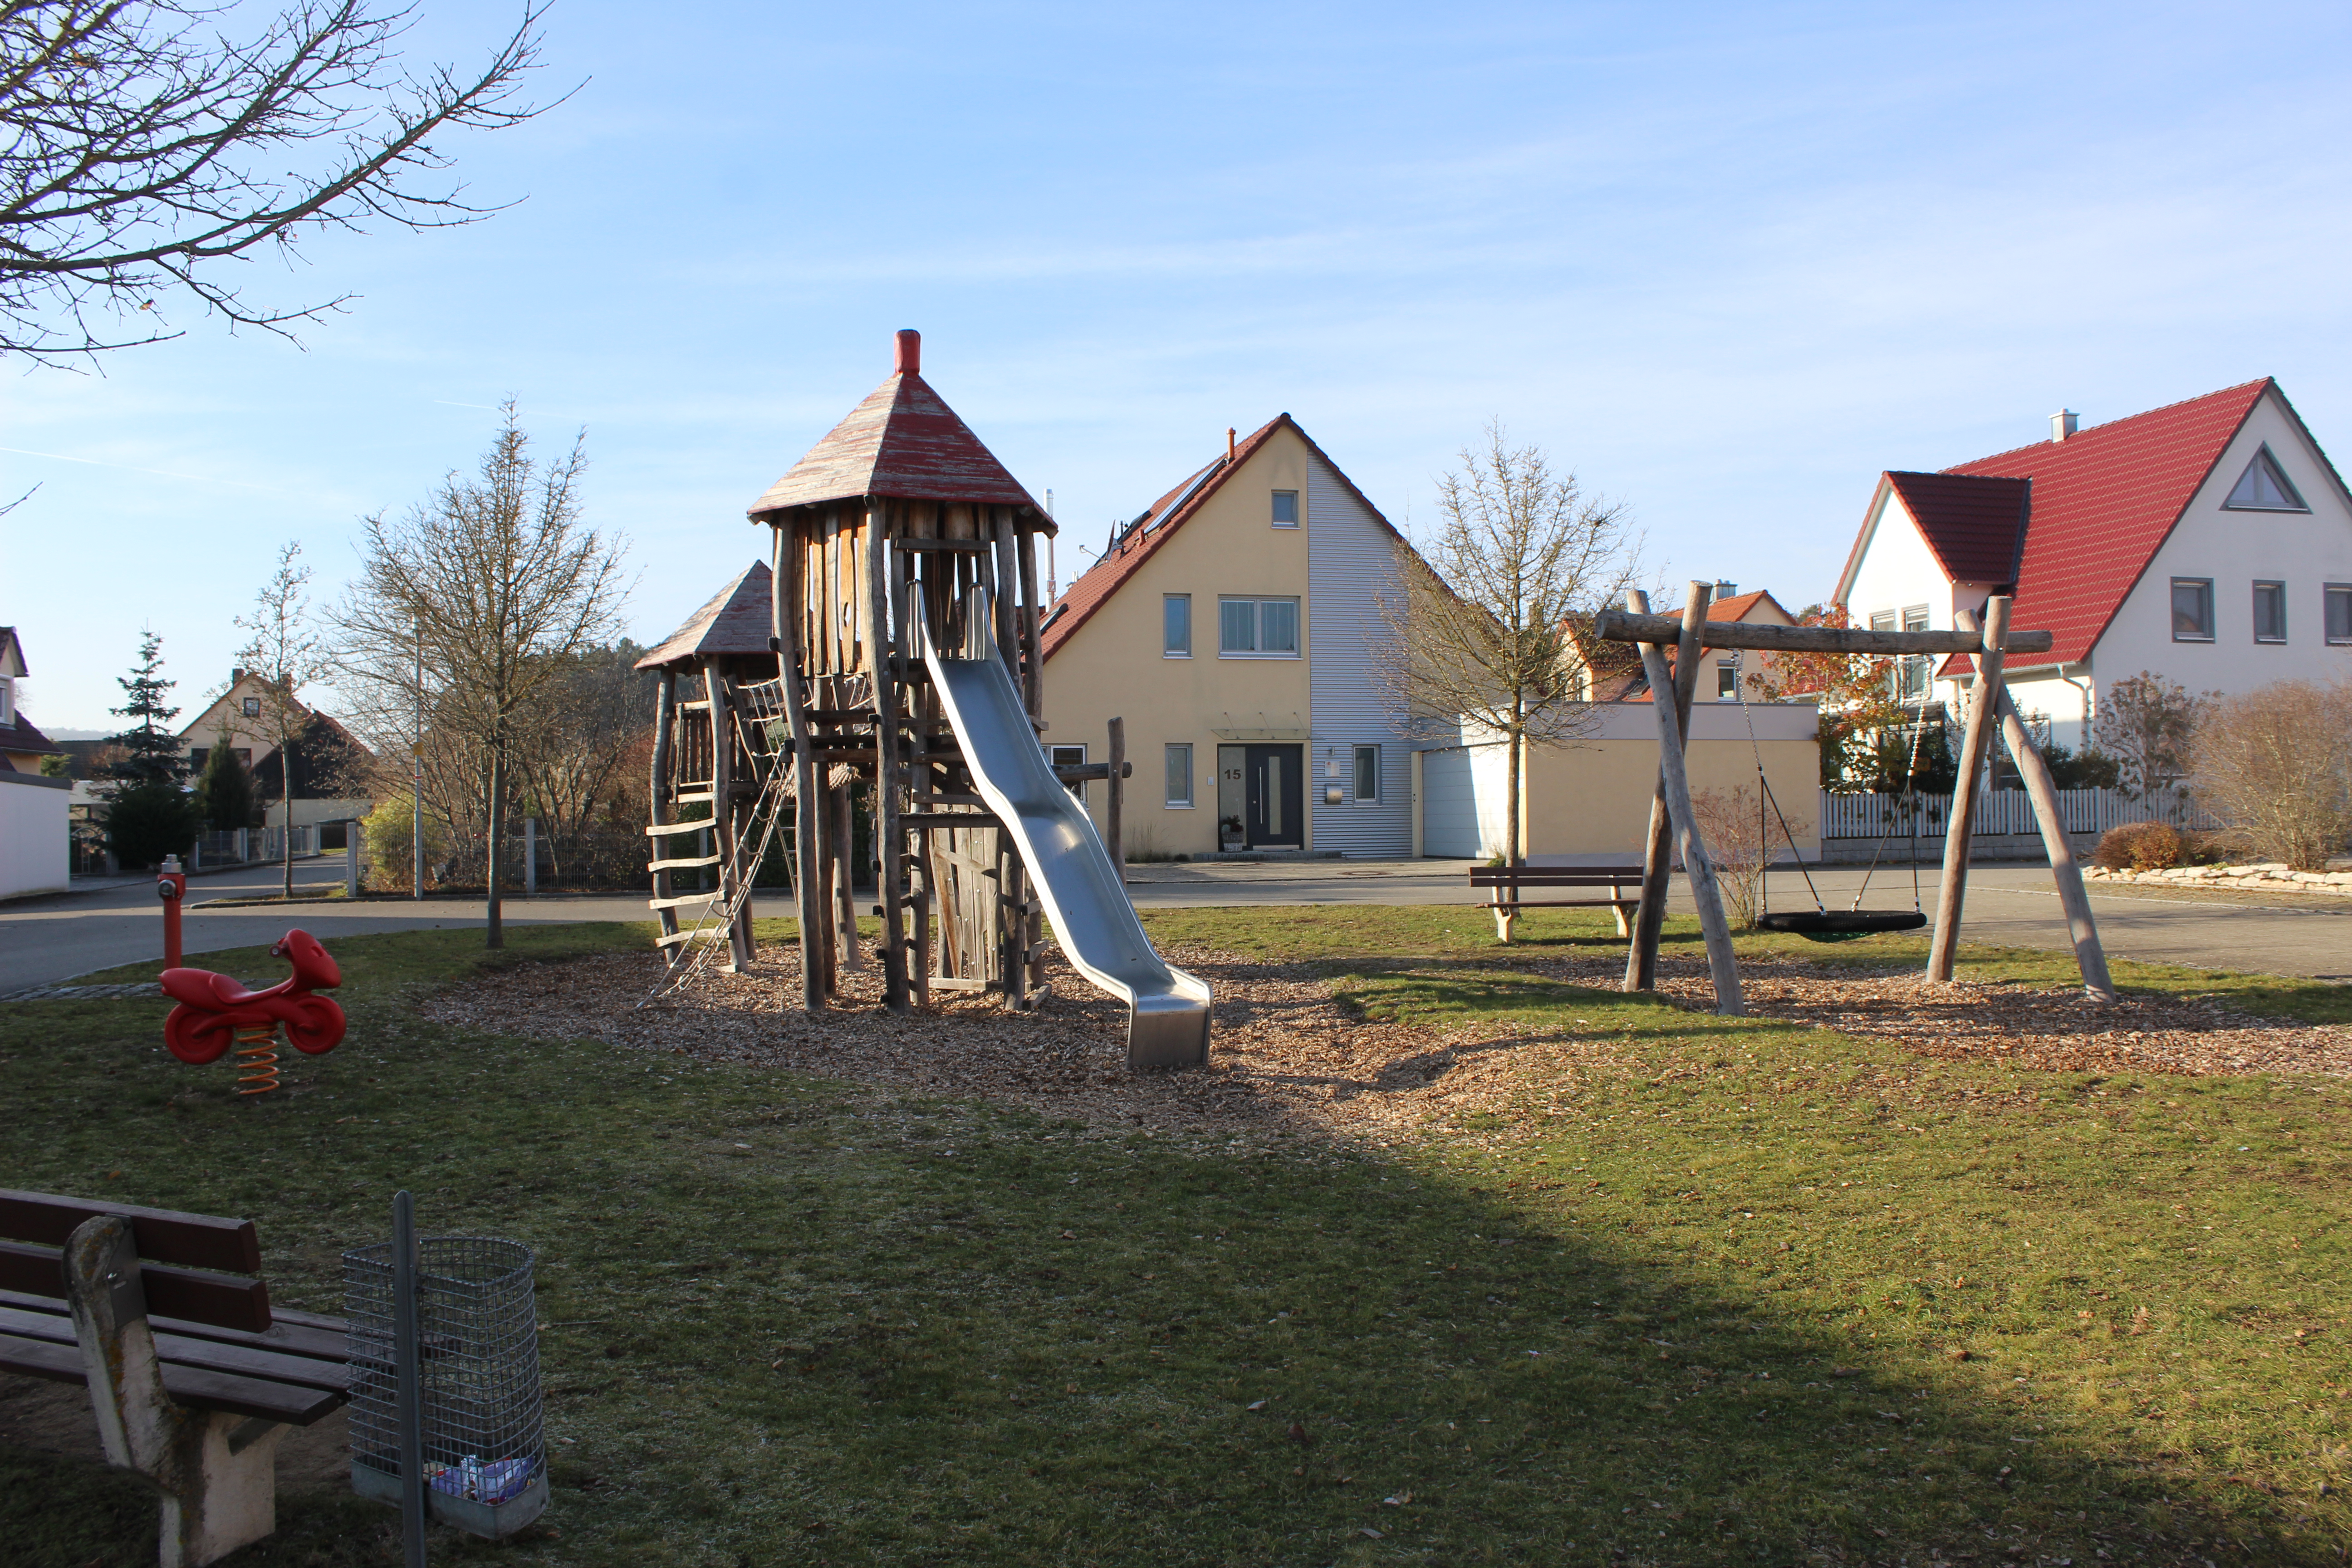  Spielplatz Ottersdorf 